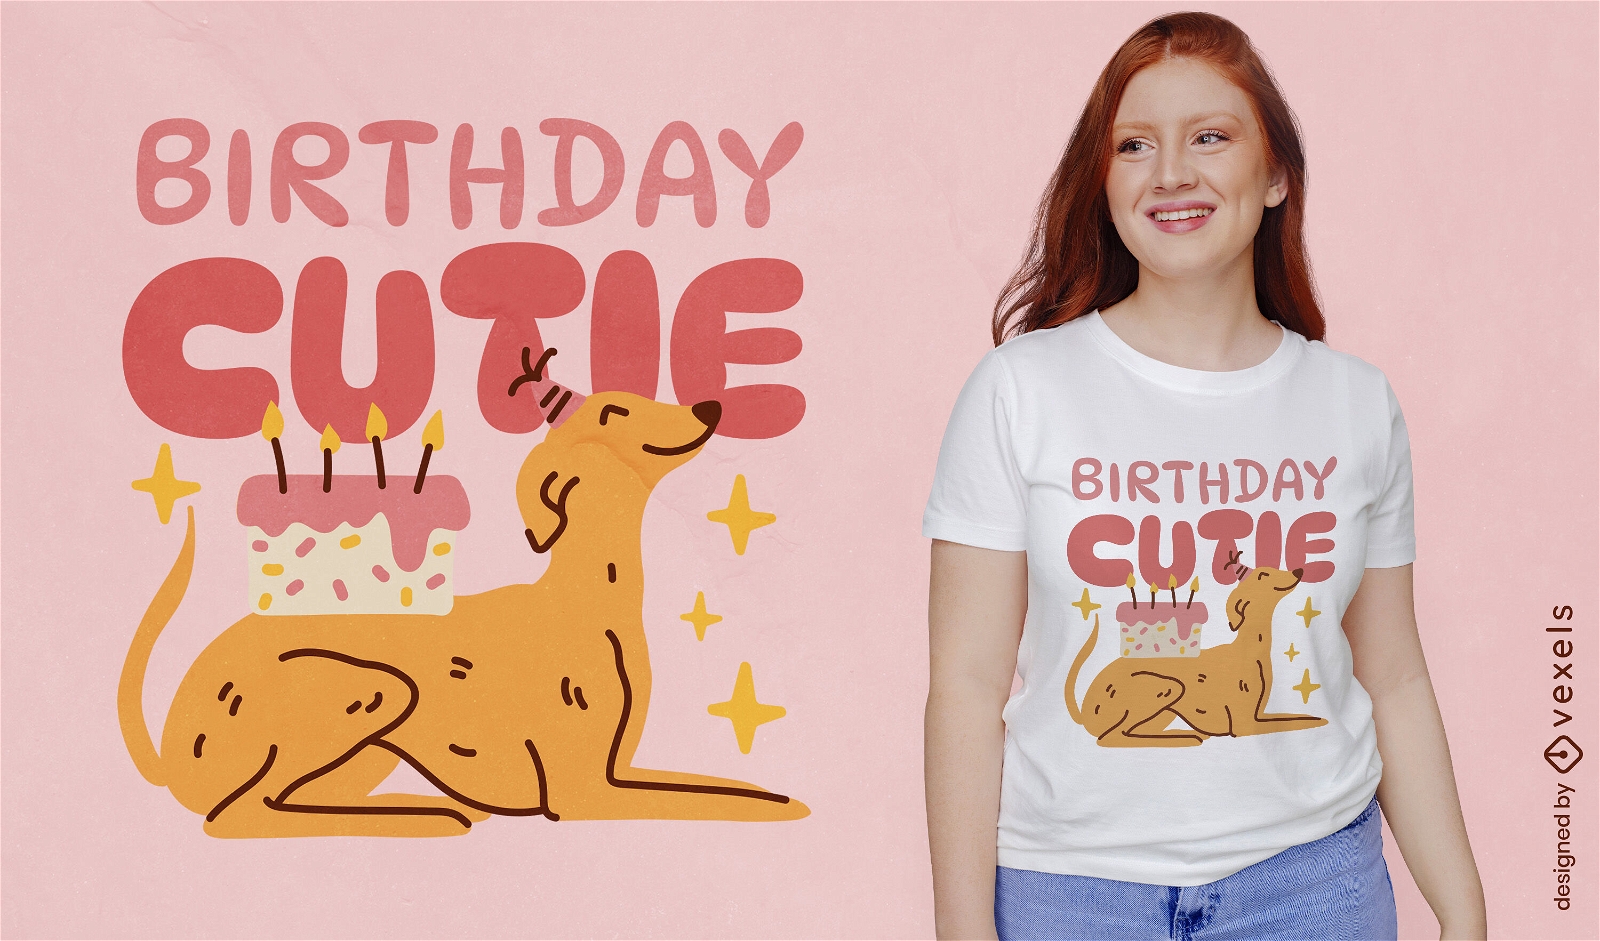 S??es Hunde-T-Shirt-Design zum Geburtstag